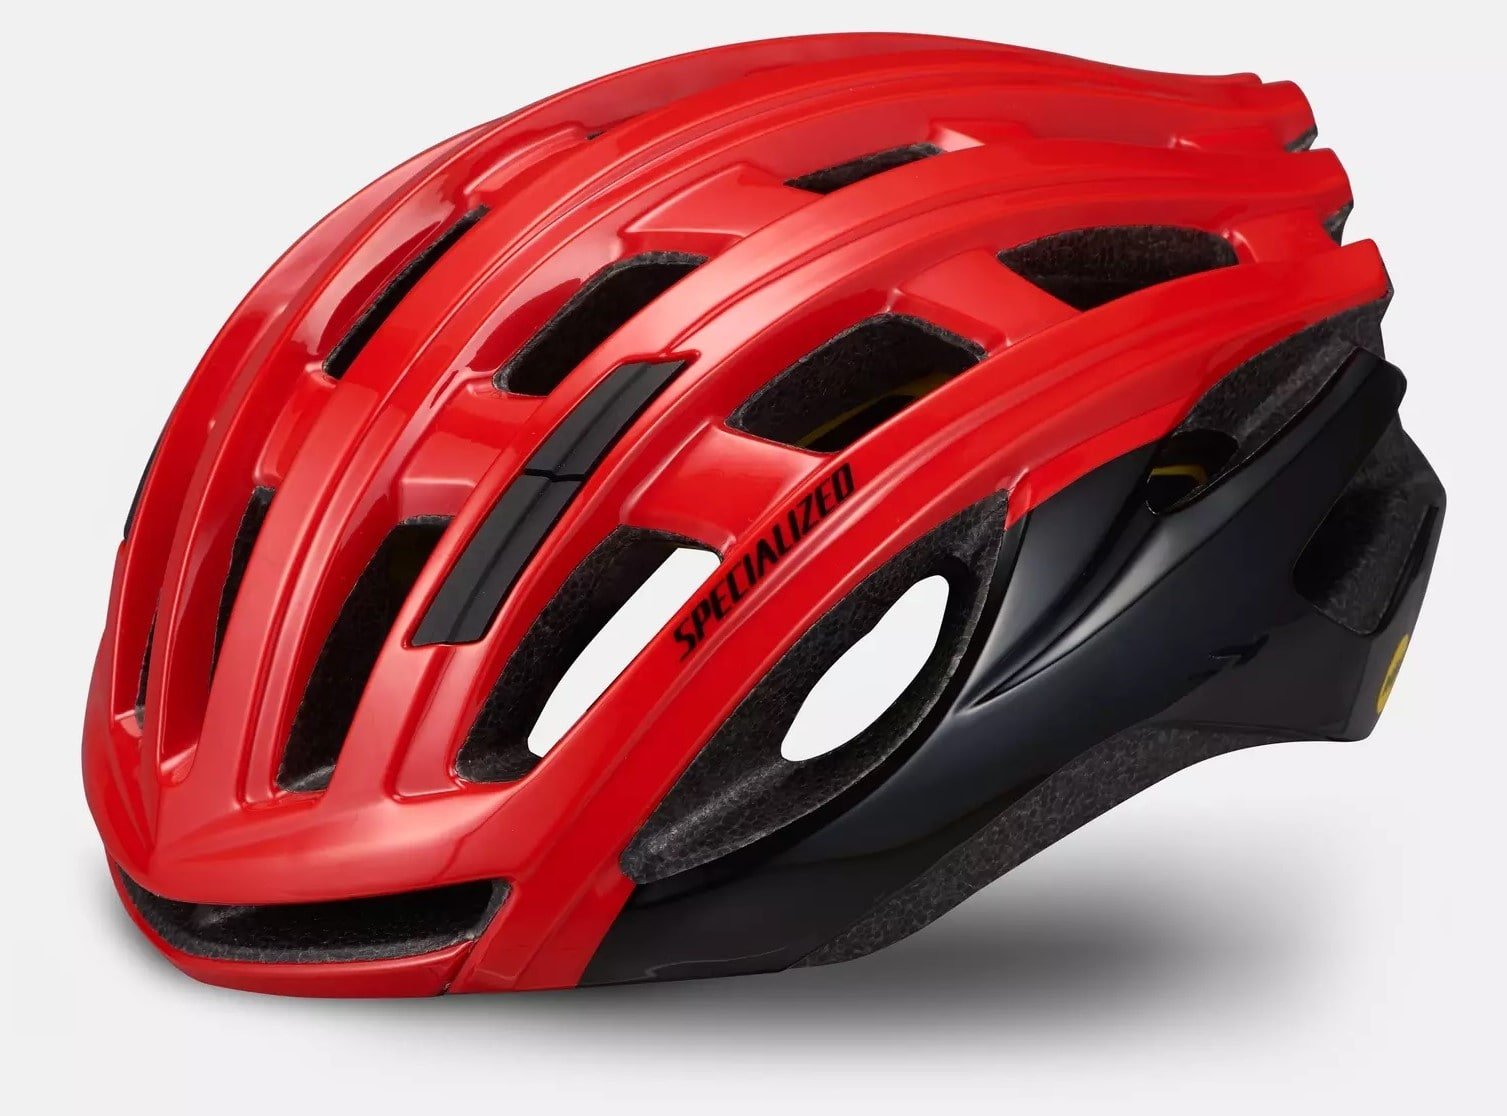 Specialized Propero 3 Helmet